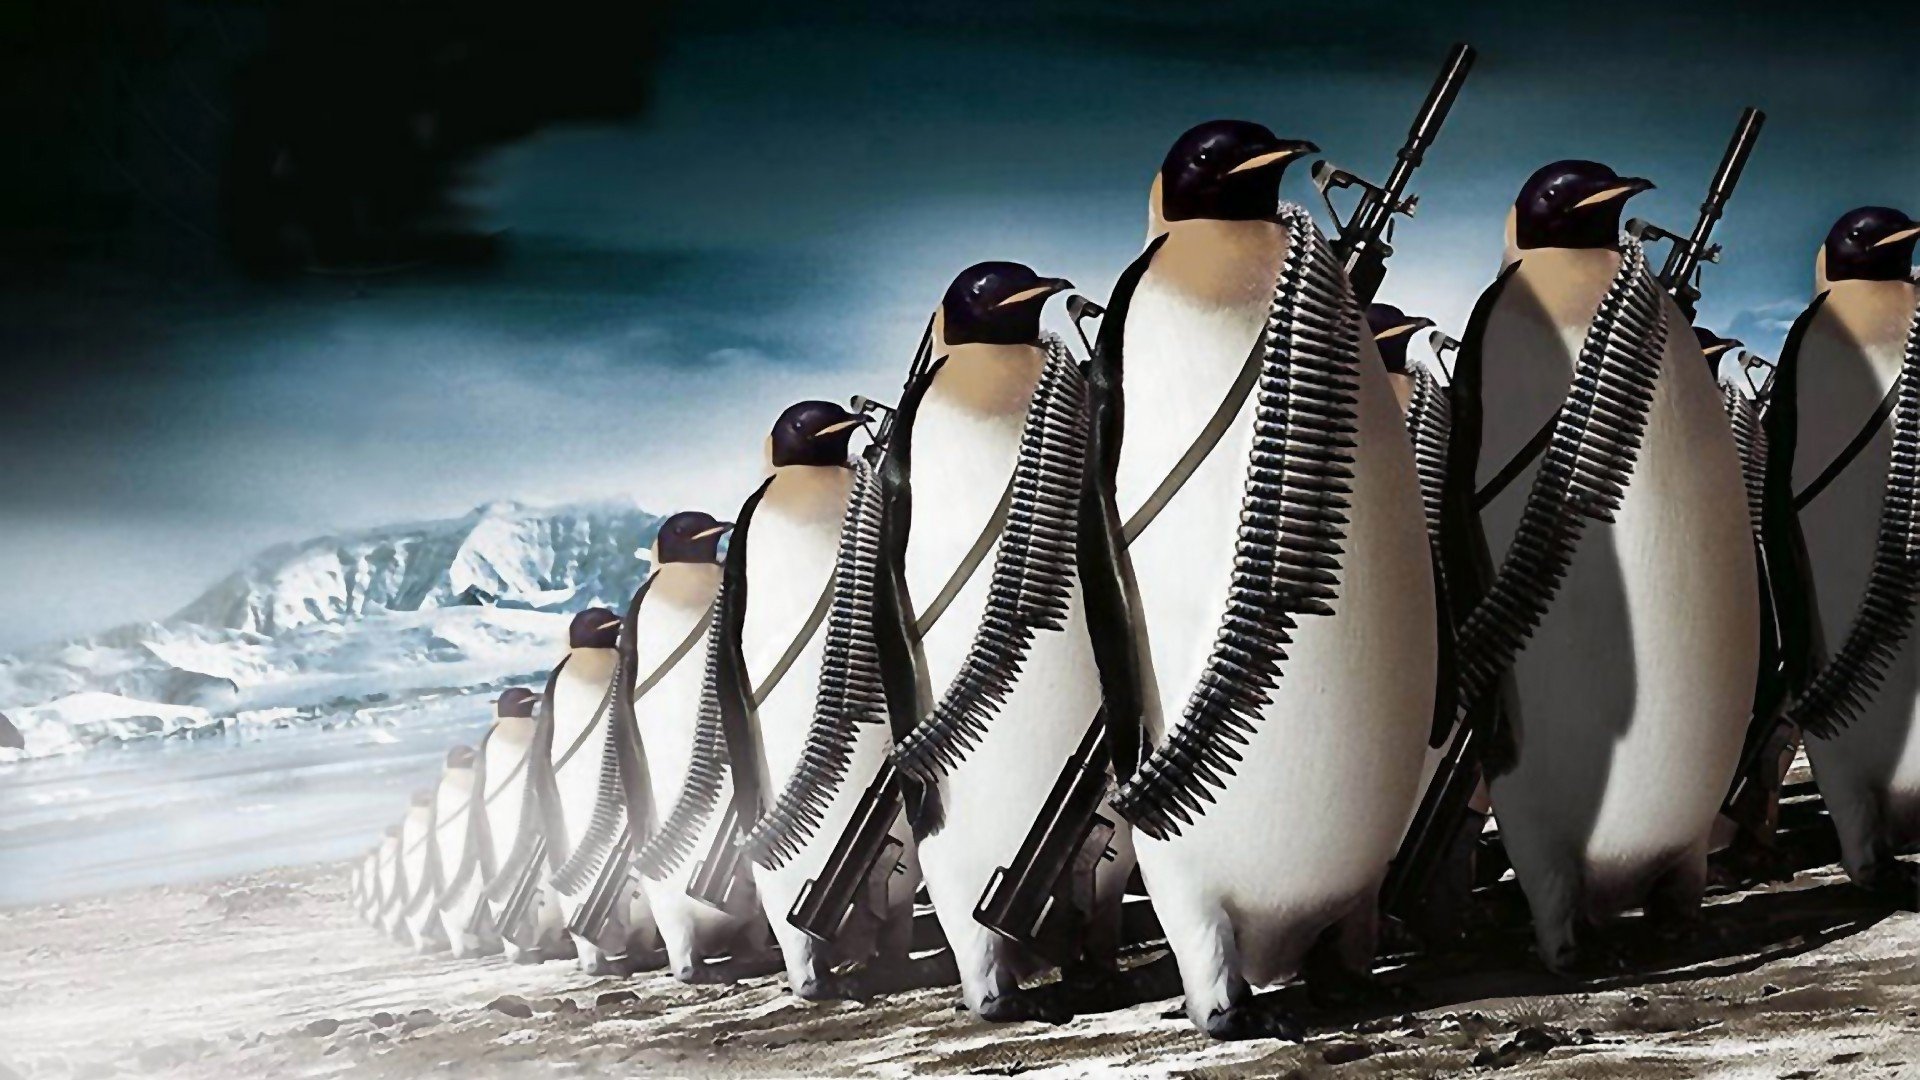 penguins, Machine gun, War, Digital art Wallpaper